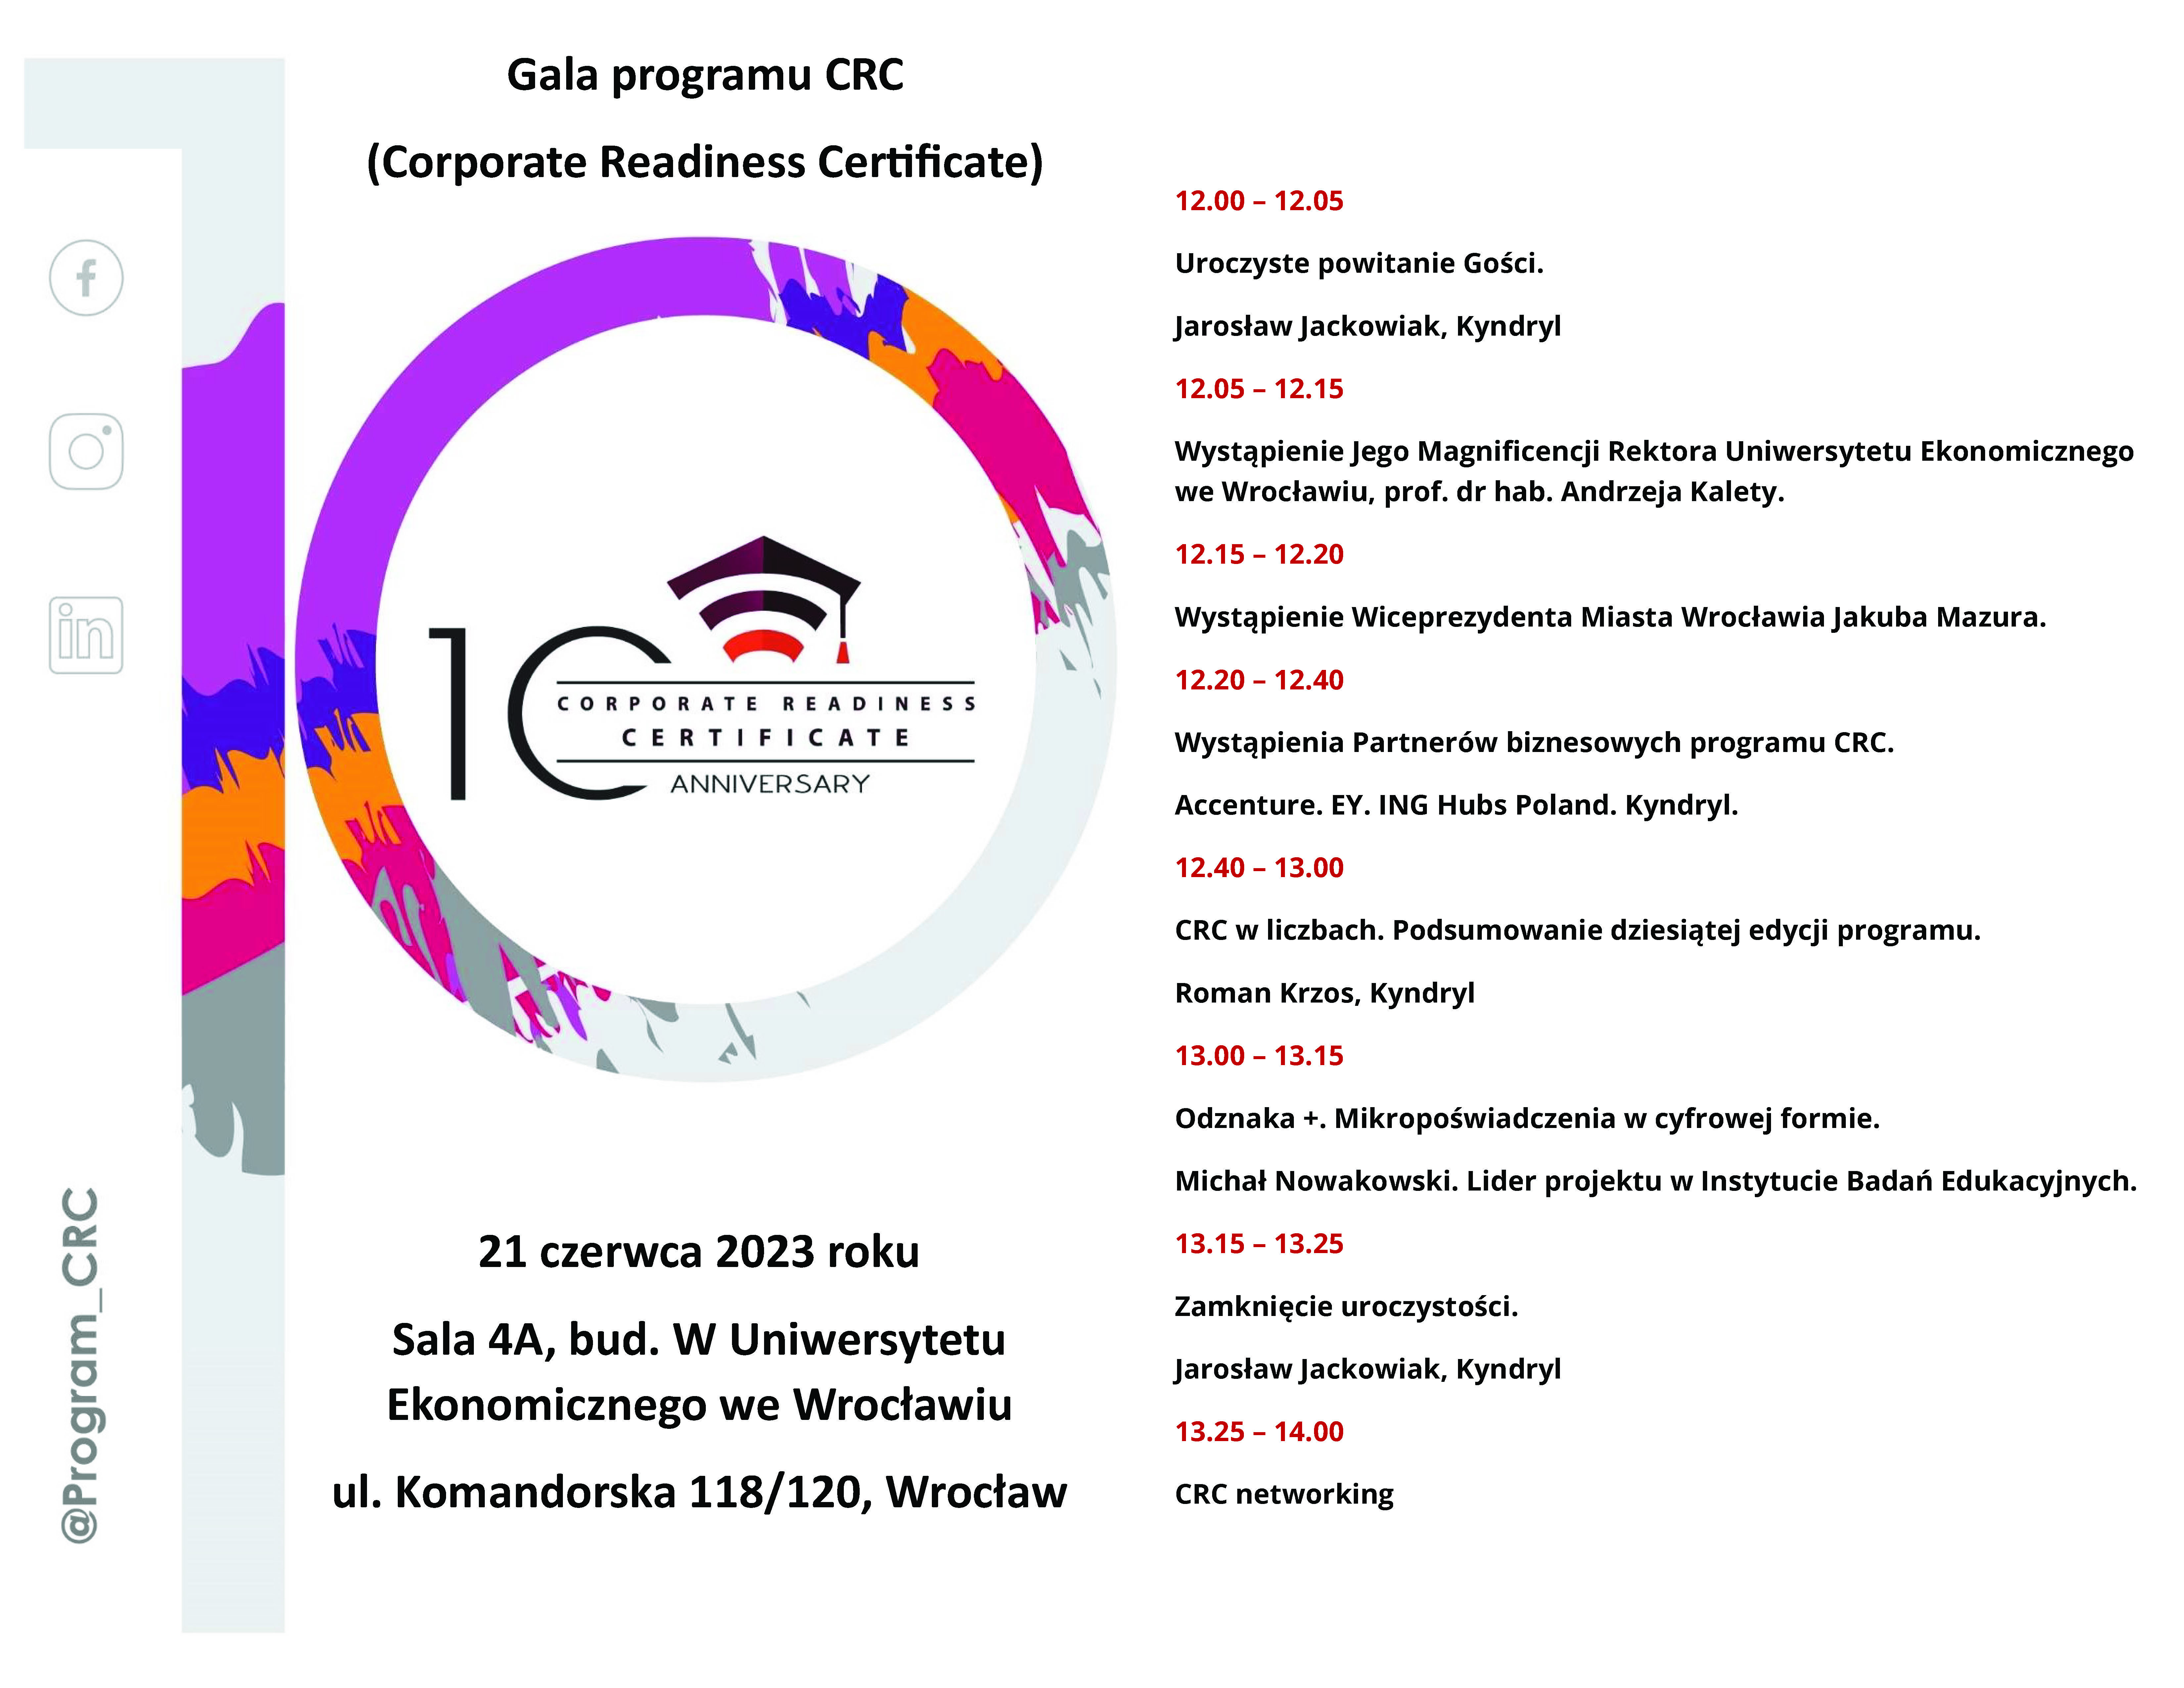 gala_crc_wroclaw_program_2023